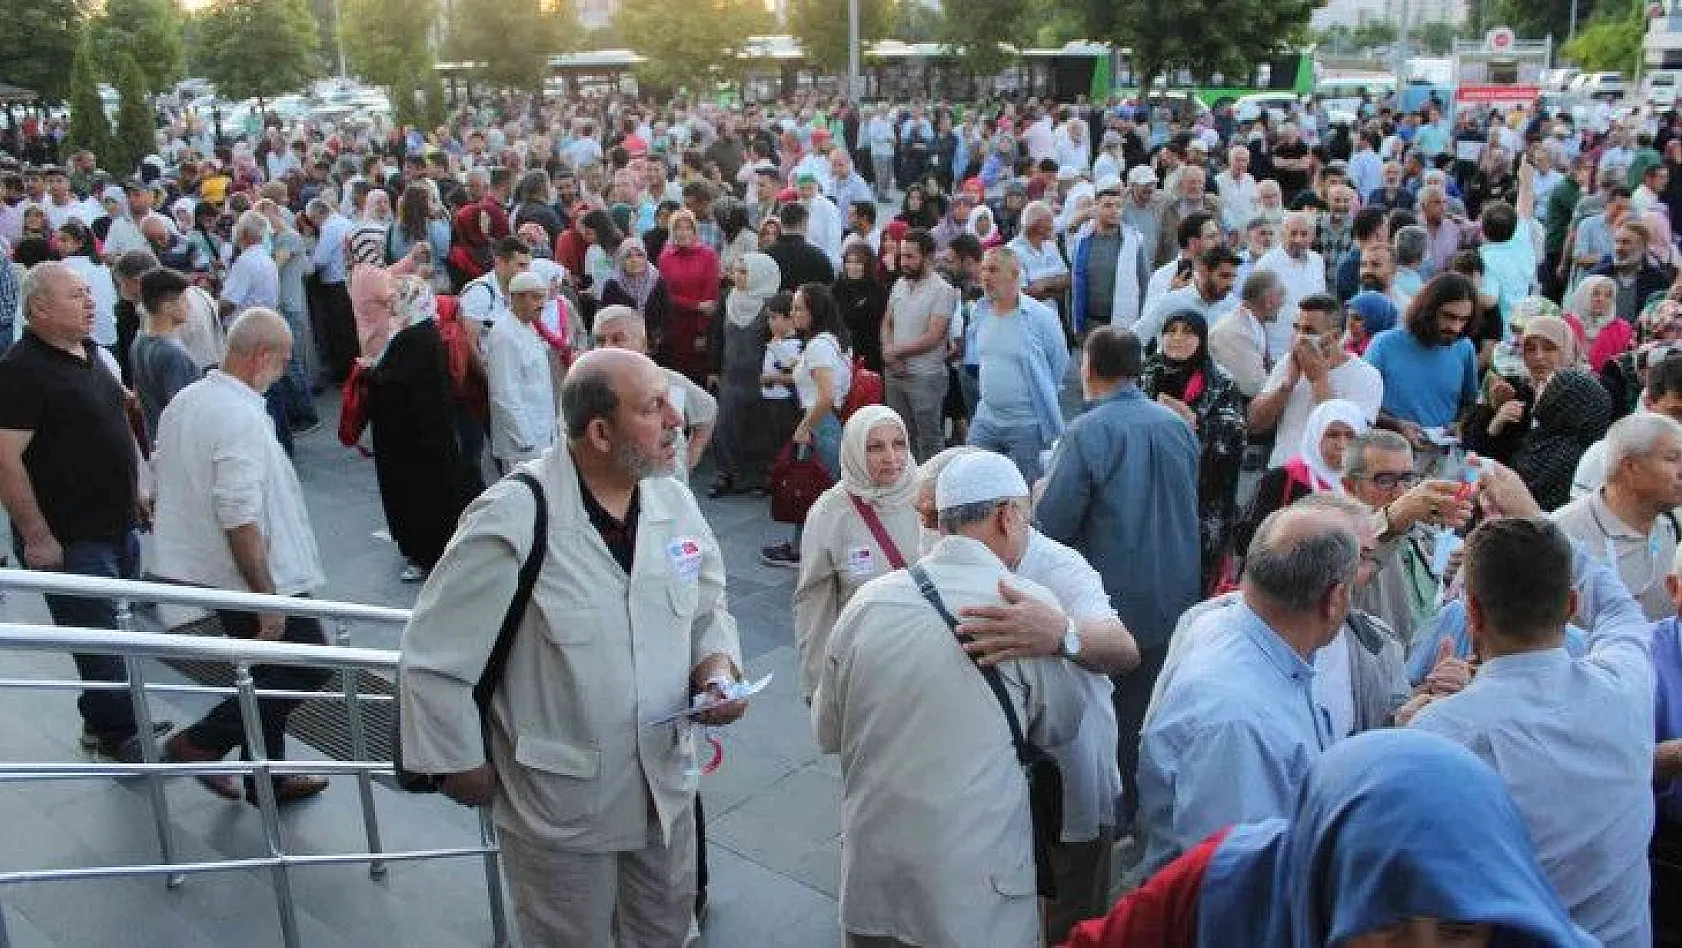 Kayseri'den 180 kişi gitti